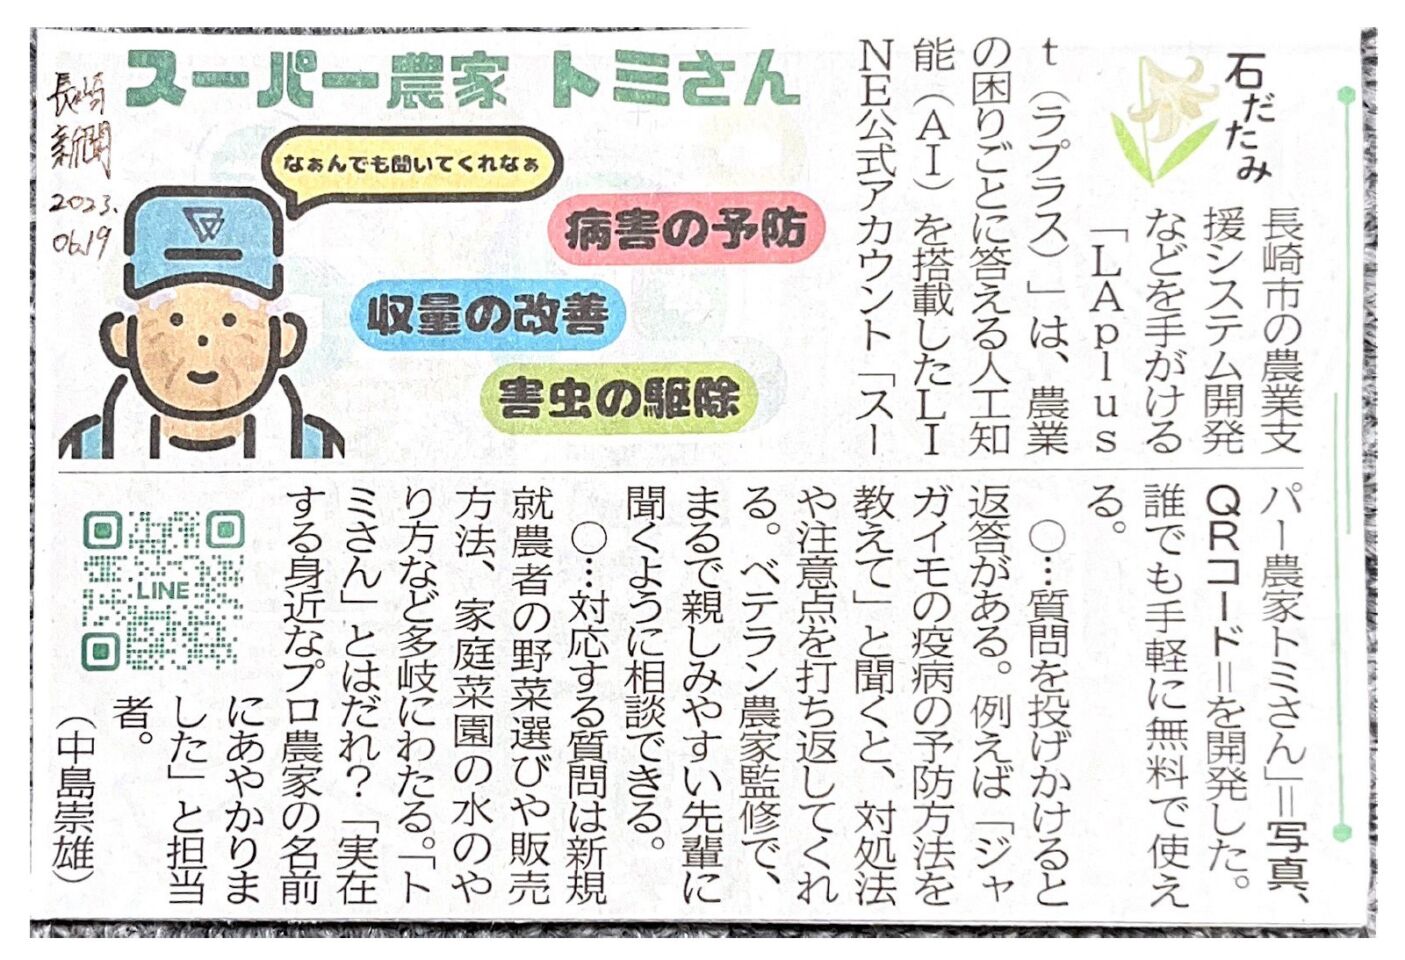 長崎新聞にスーパー農家トミさんの紹介記事が掲載されました。